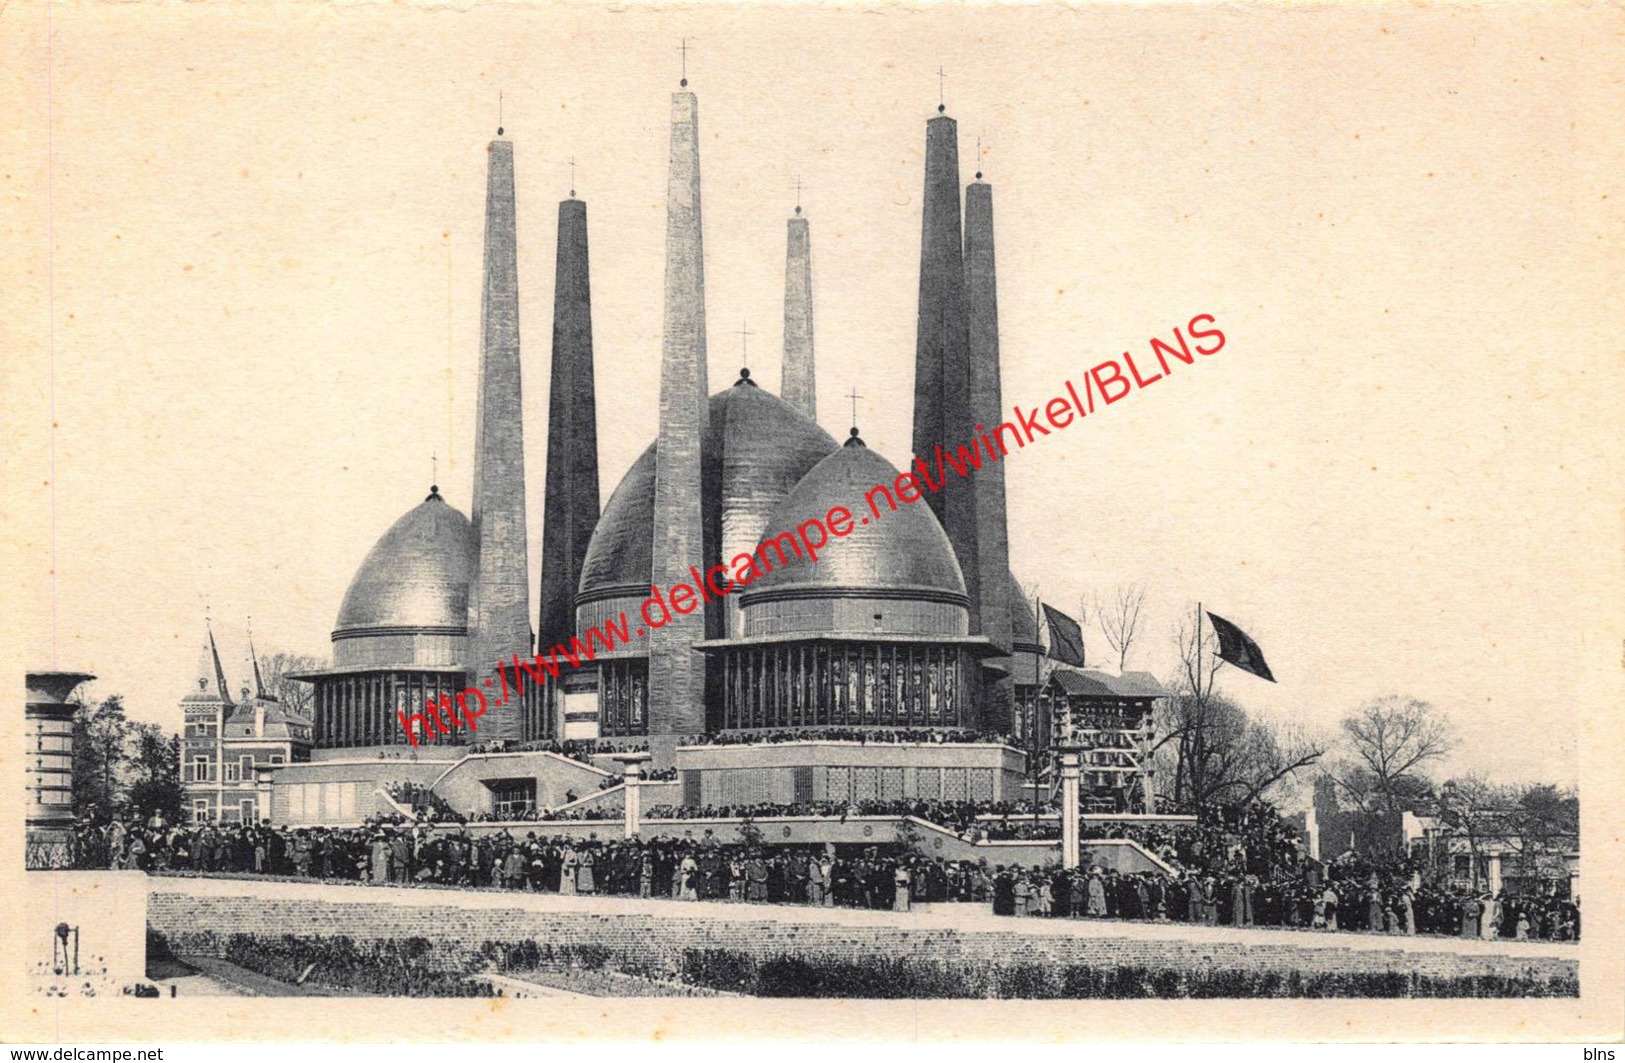 Palais De La Vie Catholique - Exposition Universelle Et Internationale De Bruxelles 1935 - Brussel Bruxelles - Expositions Universelles